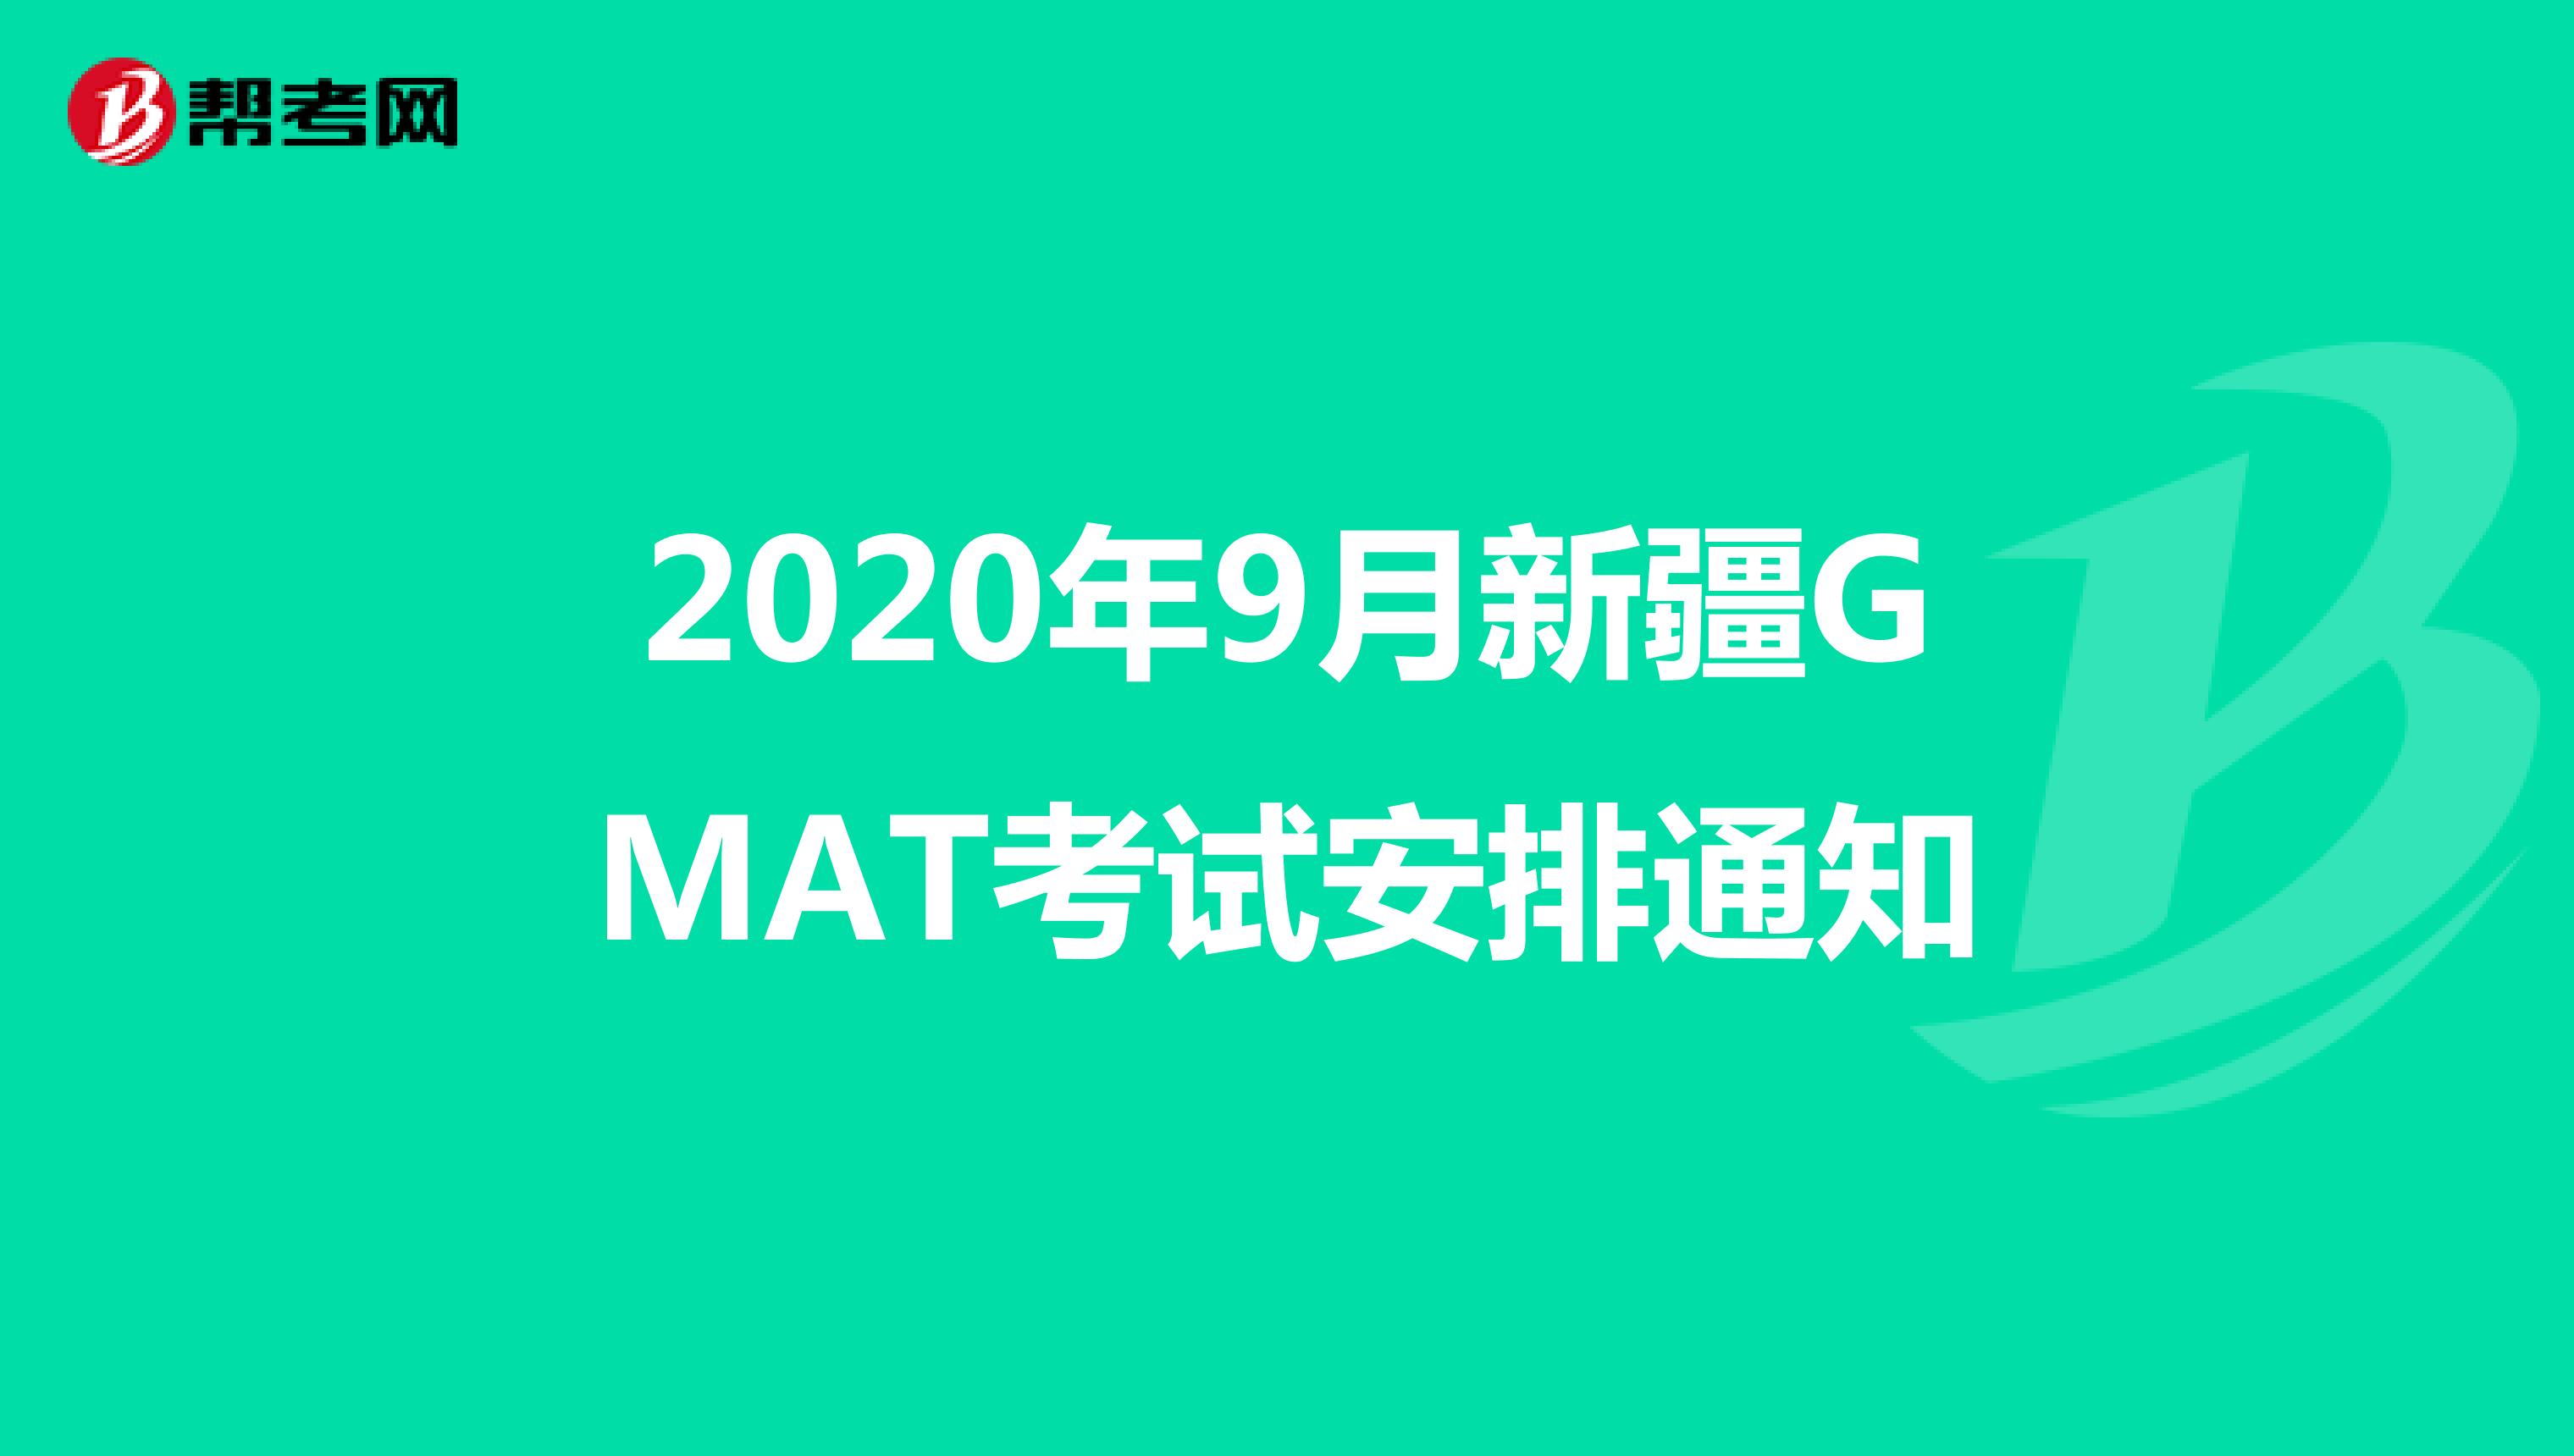 2020年9月新疆GMAT考试安排通知